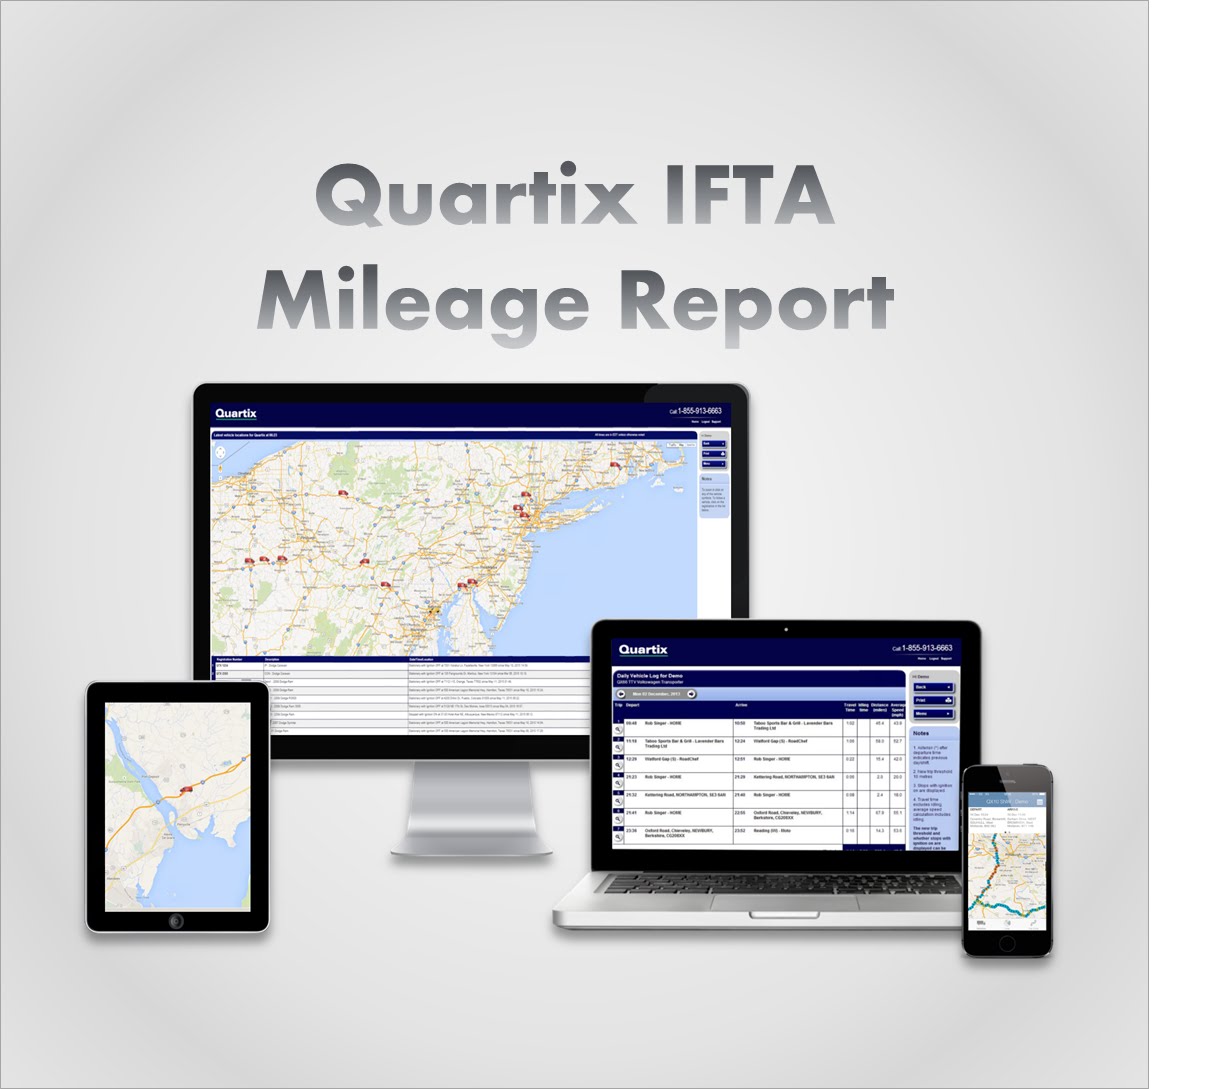 Quartix mileage report